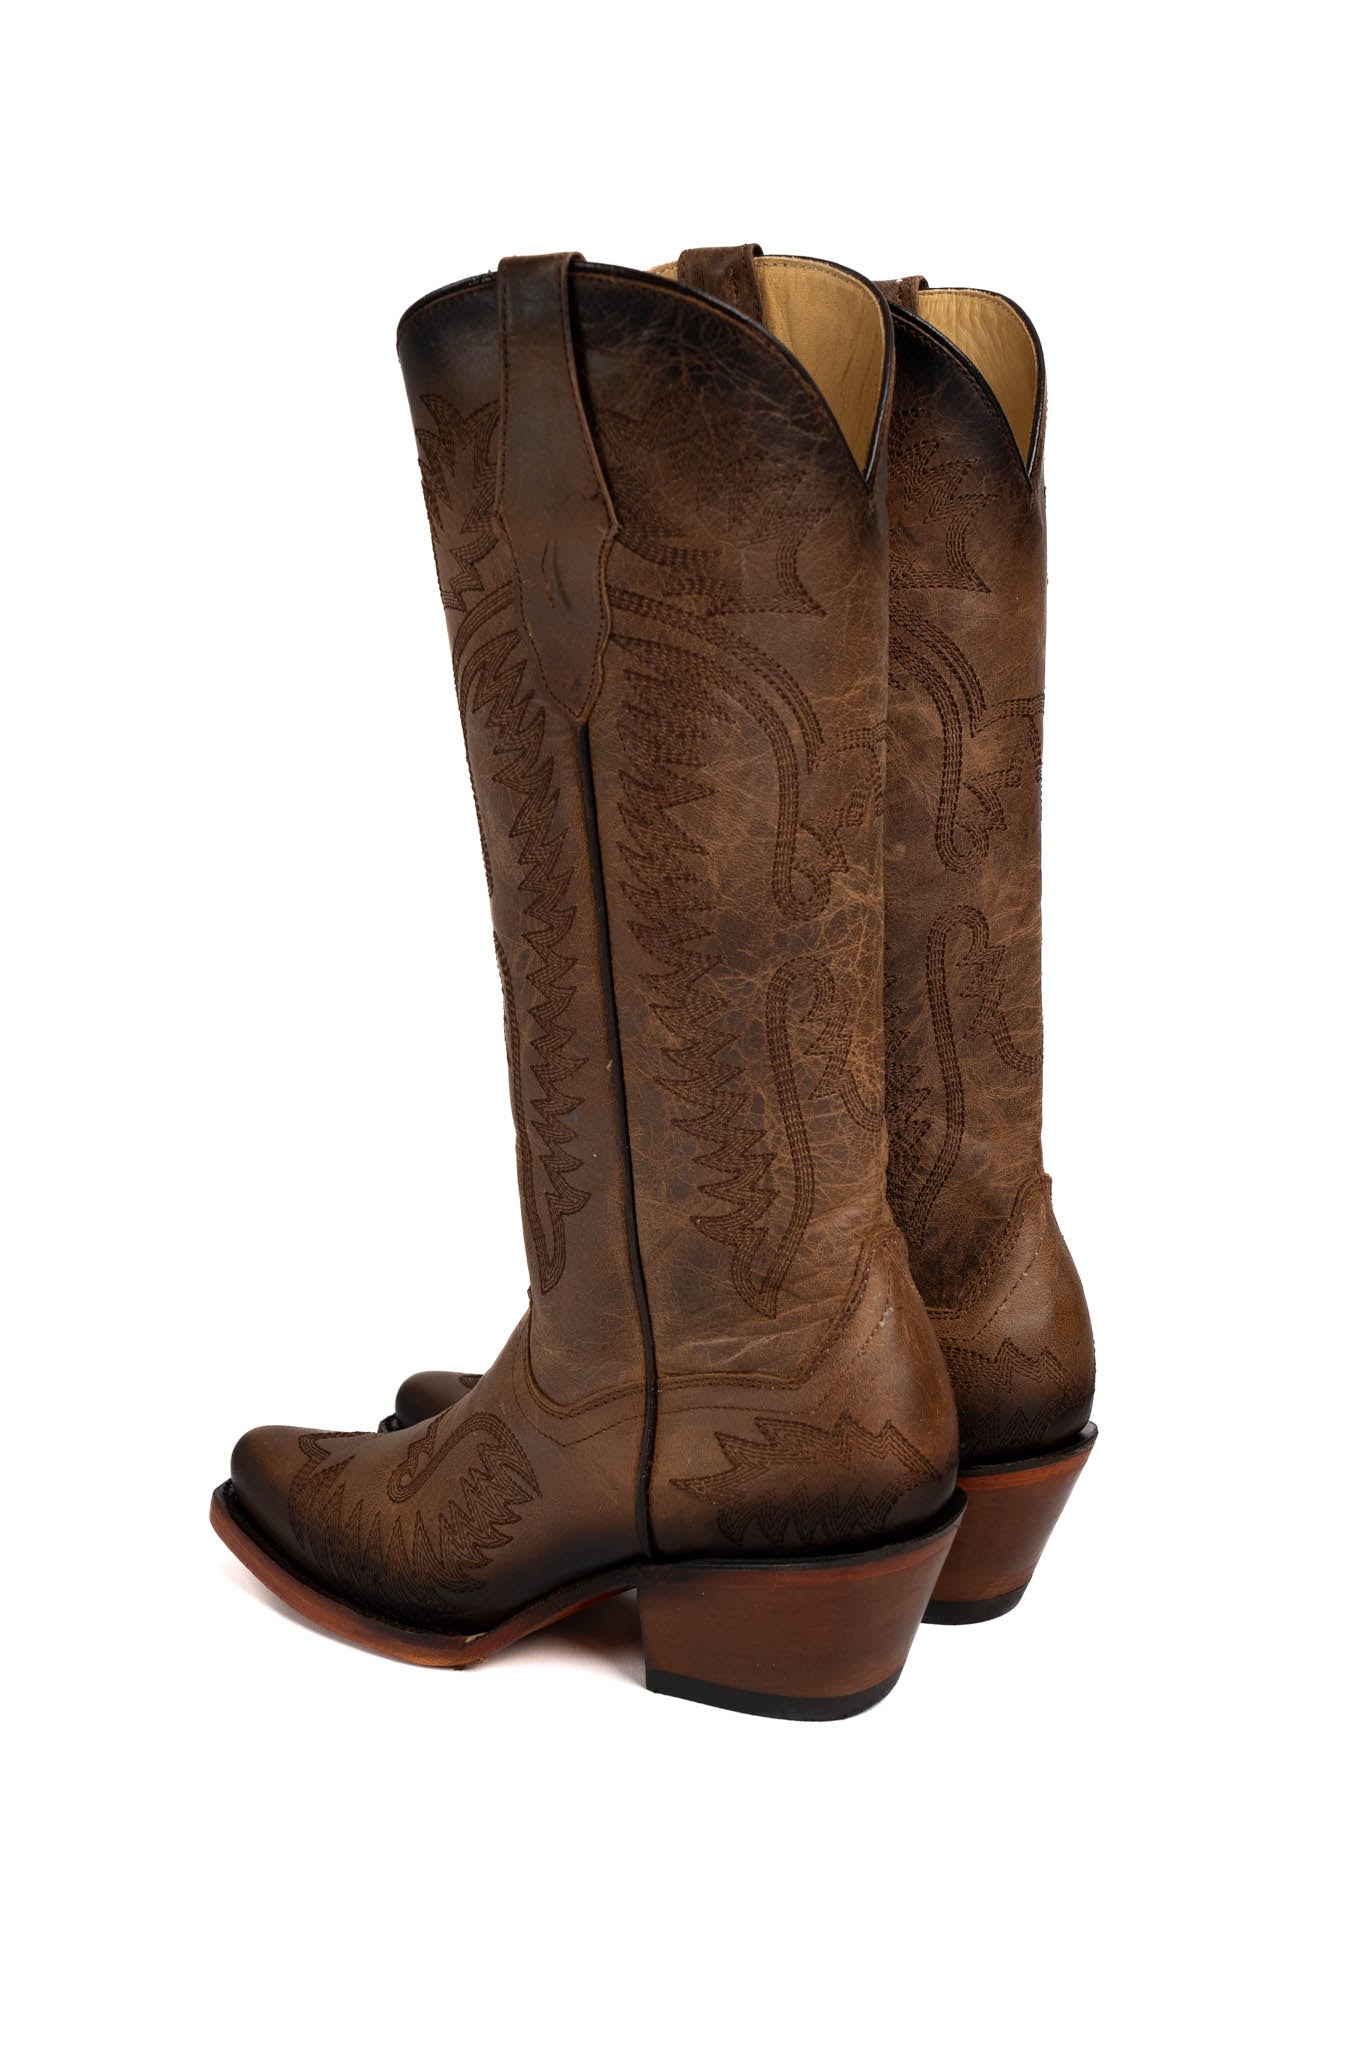 Belinda Harman Capuchino Snip Toe Midi Cowgirl Boot